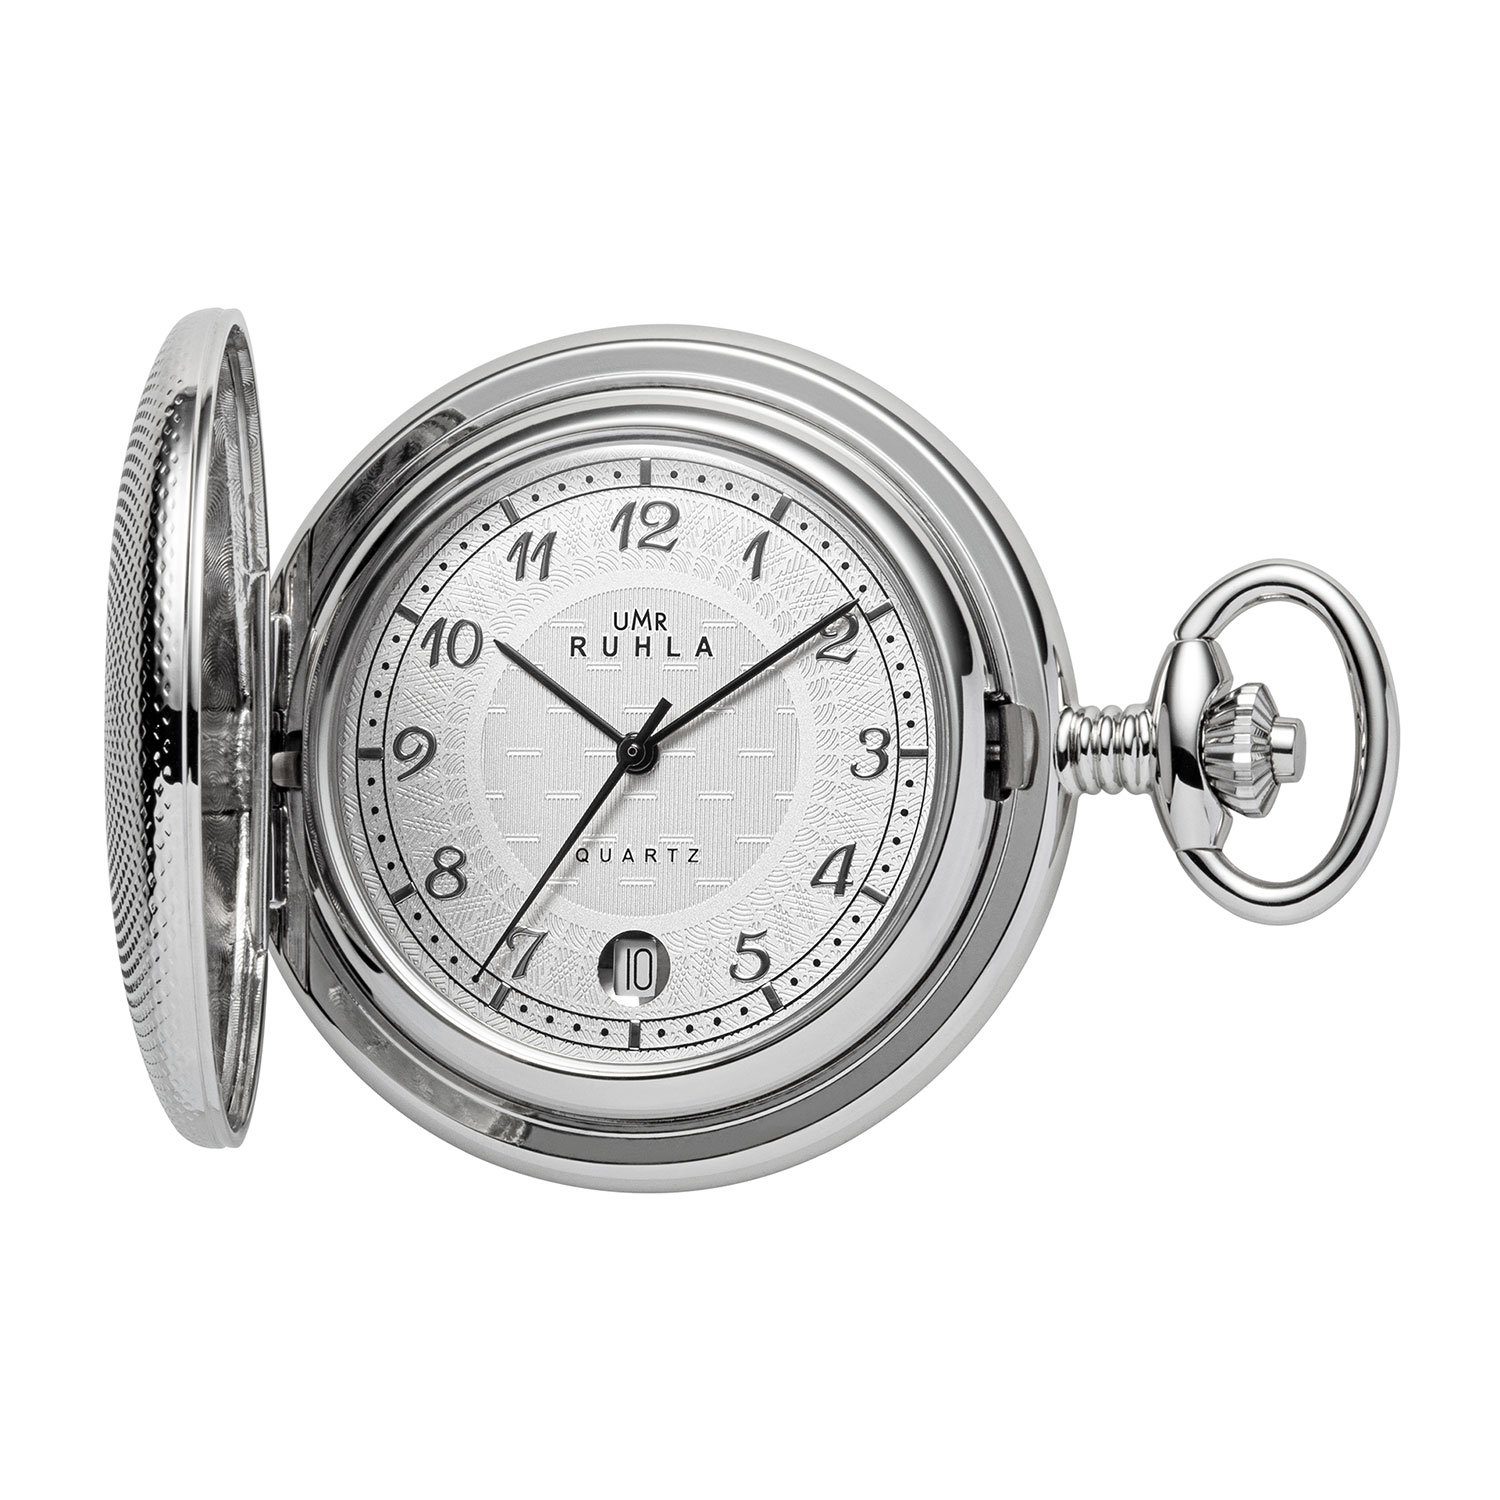 Manufaktur Uhren Ruhla UMR Quarz-Taschenuhr Ruhla - Taschenuhr